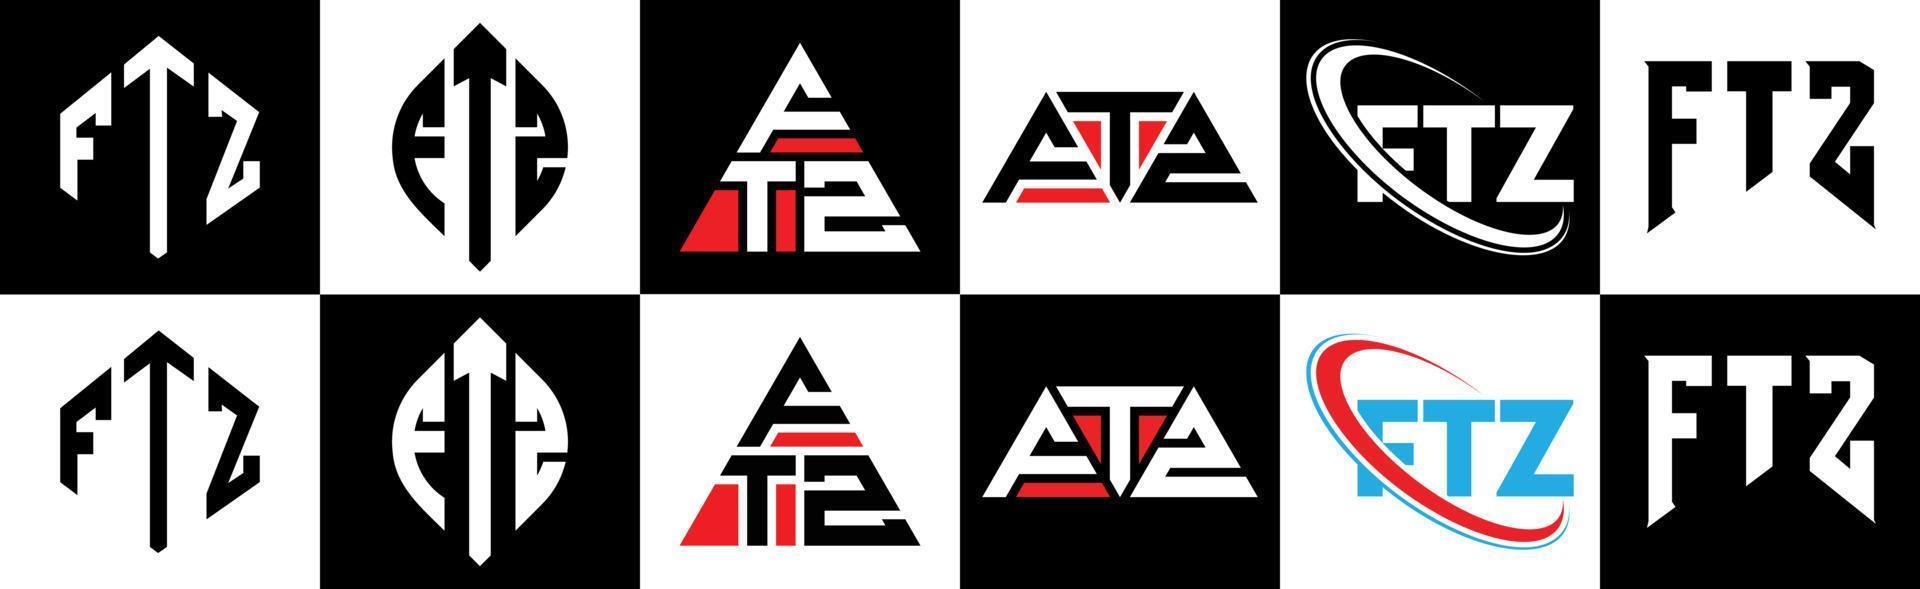 ftz-Buchstaben-Logo-Design in sechs Stilen. ftz polygon, kreis, dreieck, sechseck, flacher und einfacher stil mit schwarz-weißem buchstabenlogo in einer zeichenfläche. ftz minimalistisches und klassisches Logo vektor